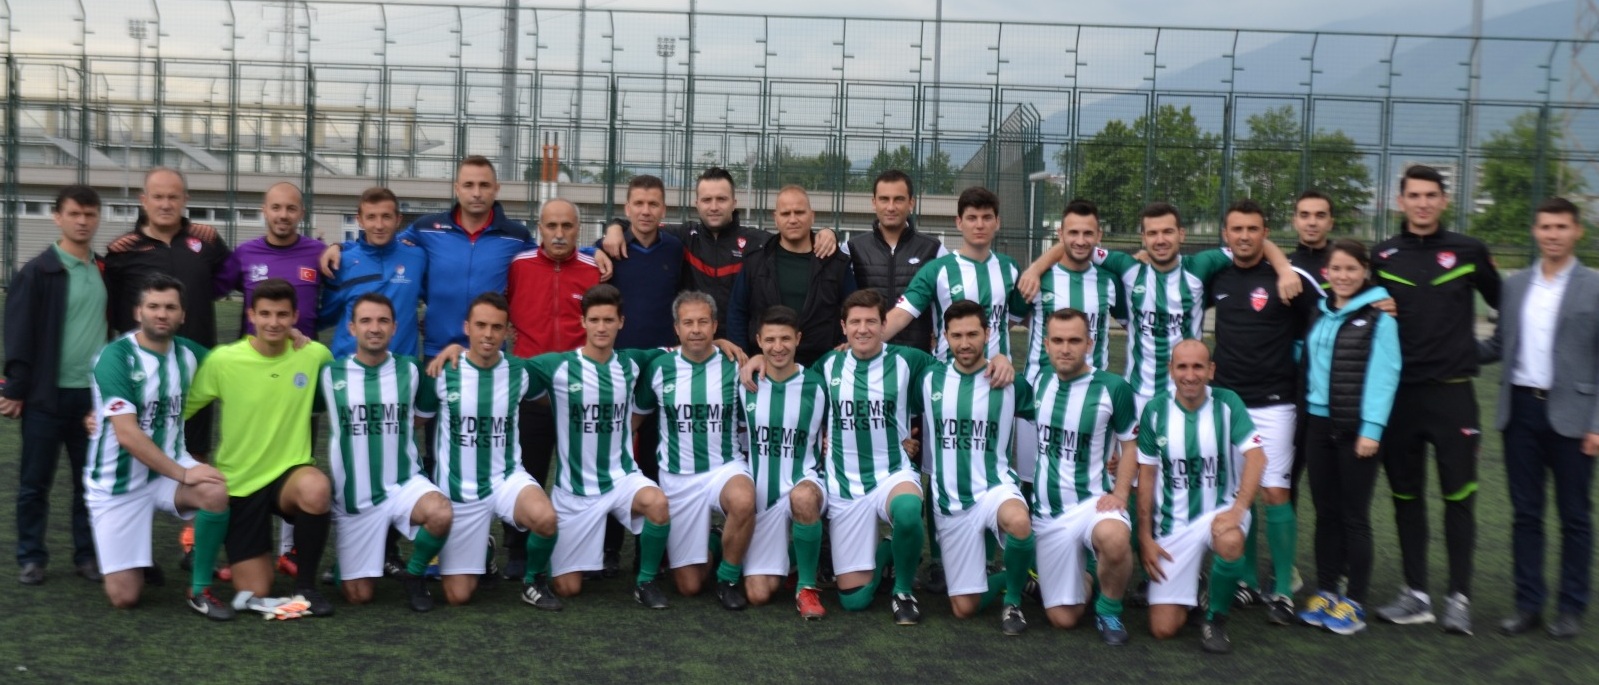 2.Bölge Futbol Turnuvasını BURSA Kazandı..!!!